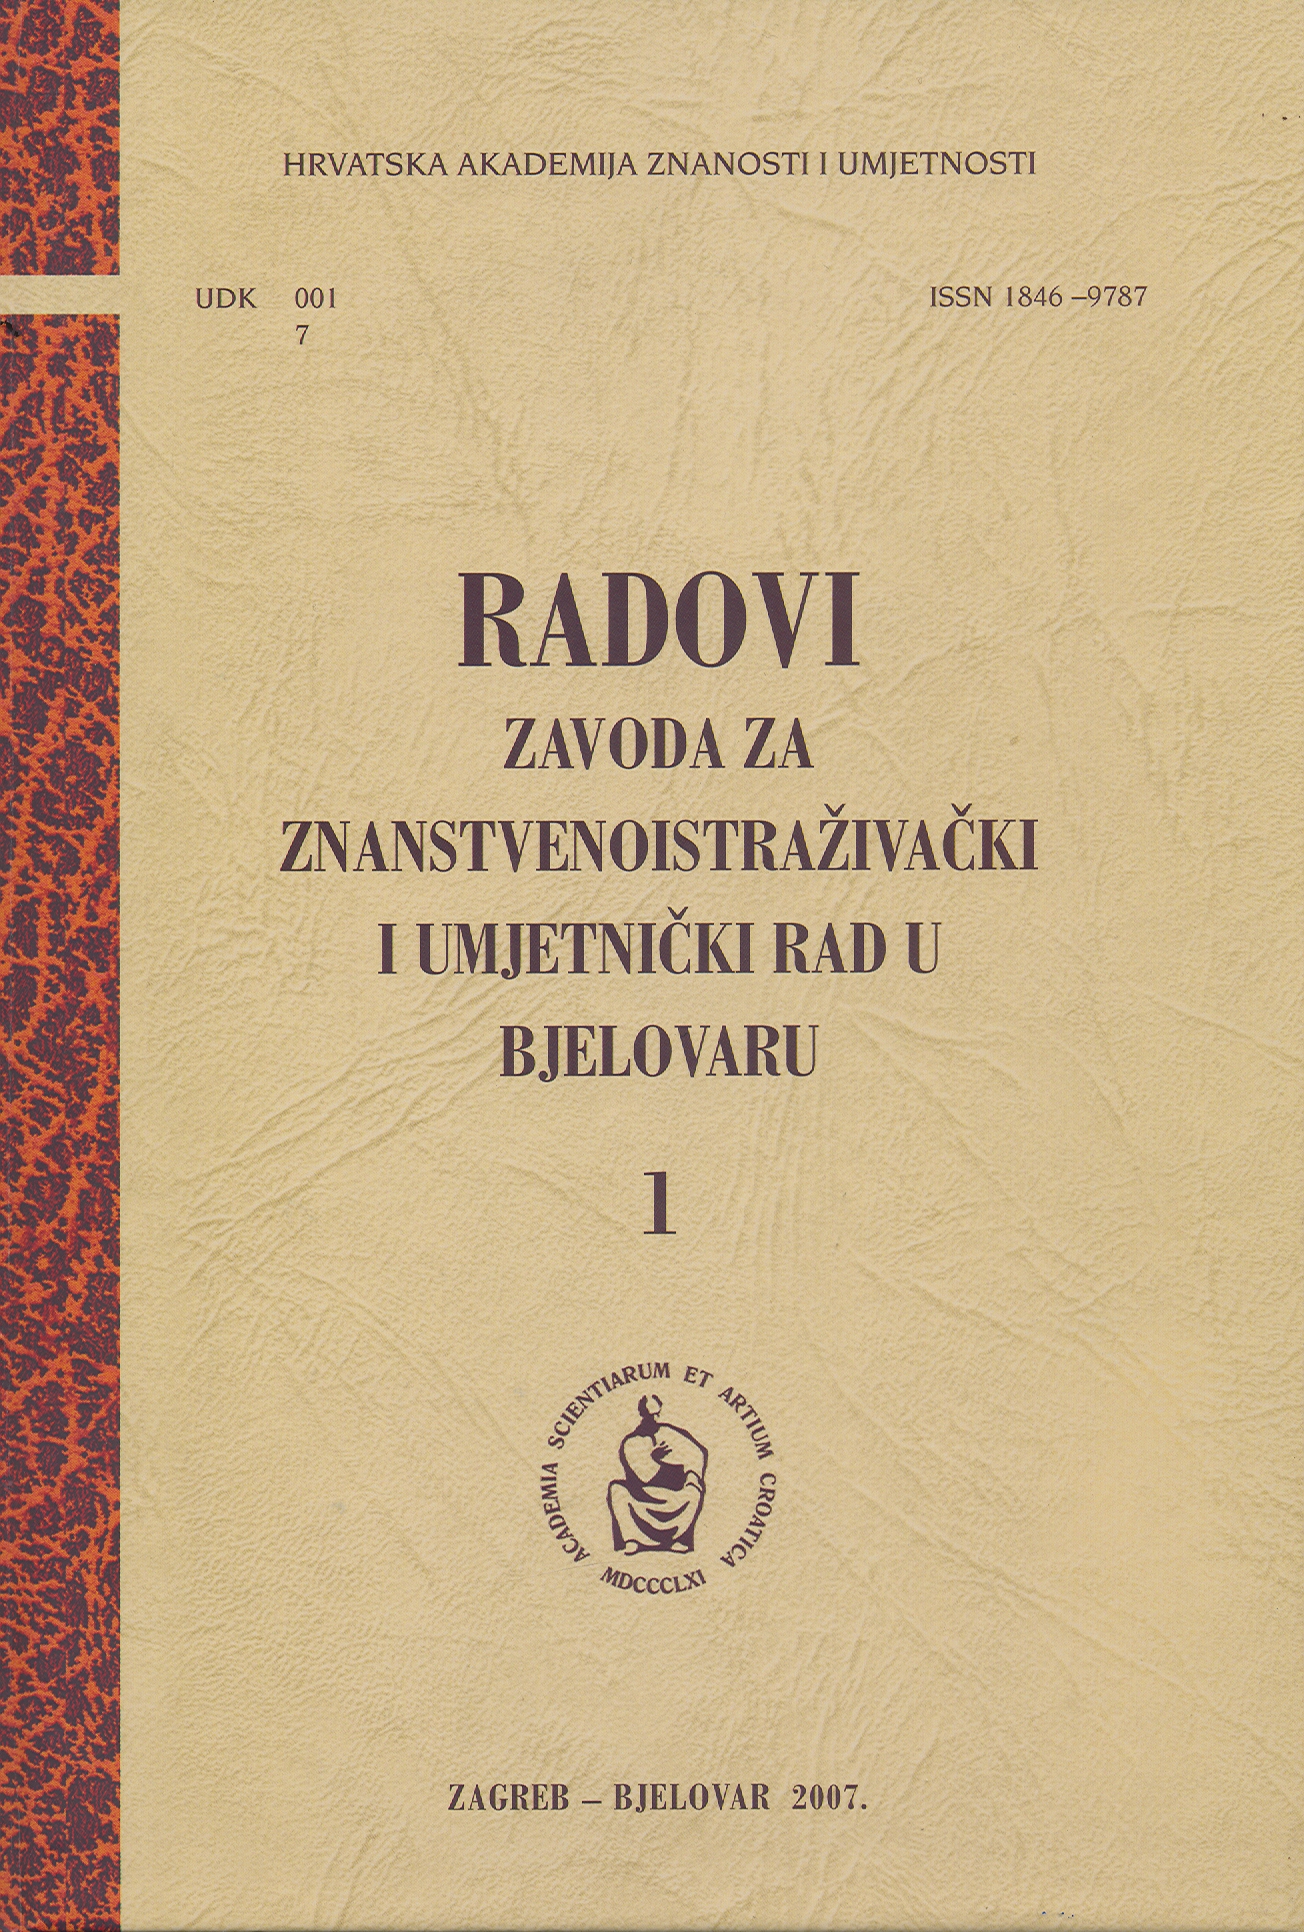 Božidar Rogina (1901.-1967.) - pionir prehrambene kemije u Hrvatskoj